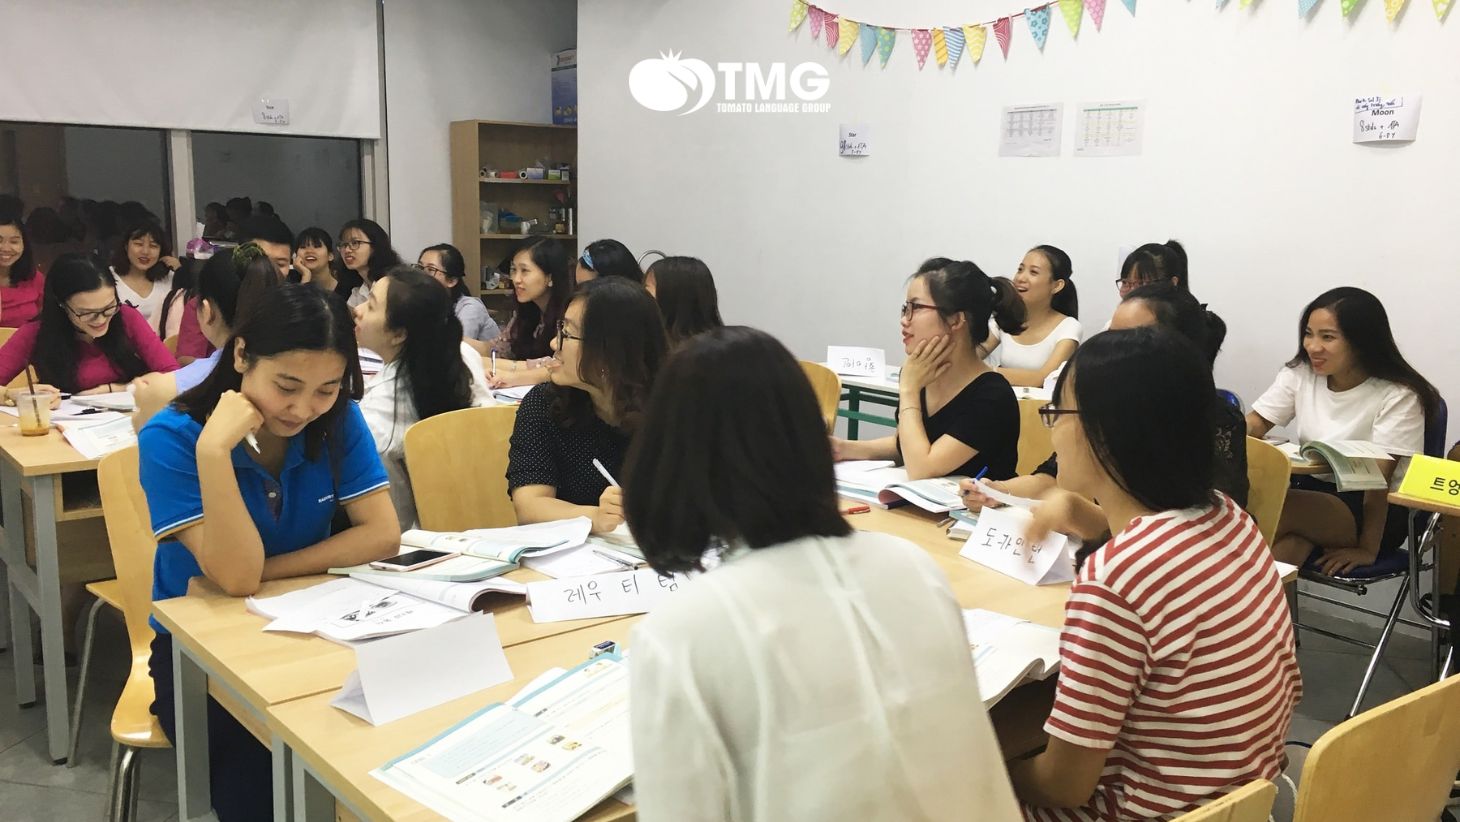 7 trung tâm dạy tiếng Hàn tại Hà Nội uy tín nhất - Ảnh 4